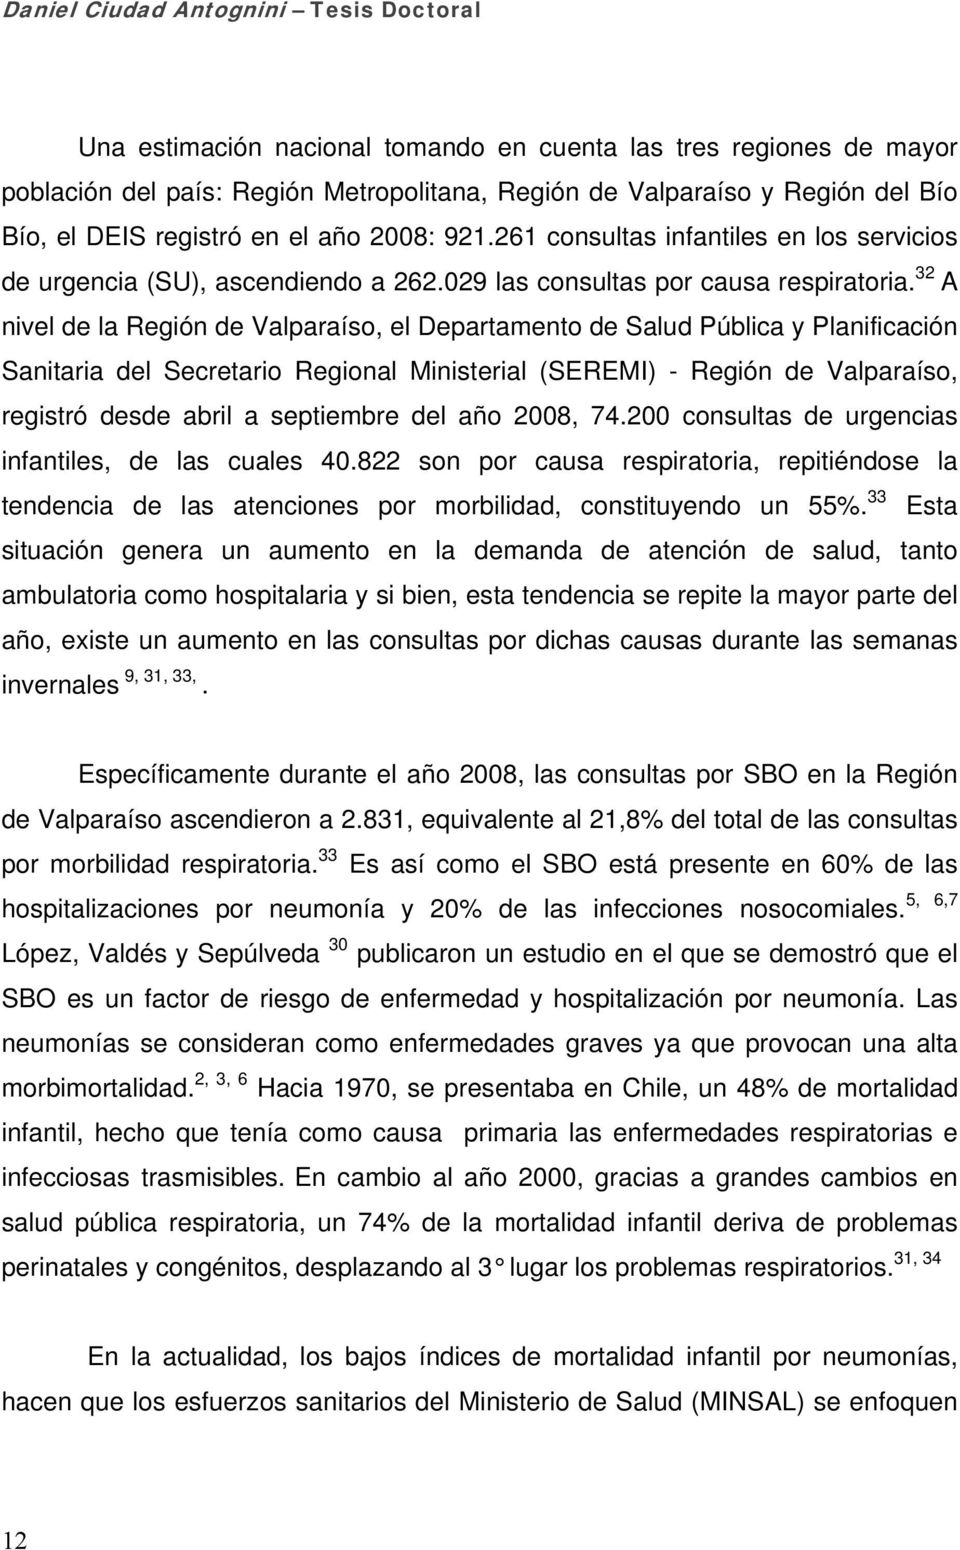 32 A nivel de la Región de Valparaíso, el Departamento de Salud Pública y Planificación Sanitaria del Secretario Regional Ministerial (SEREMI) - Región de Valparaíso, registró desde abril a